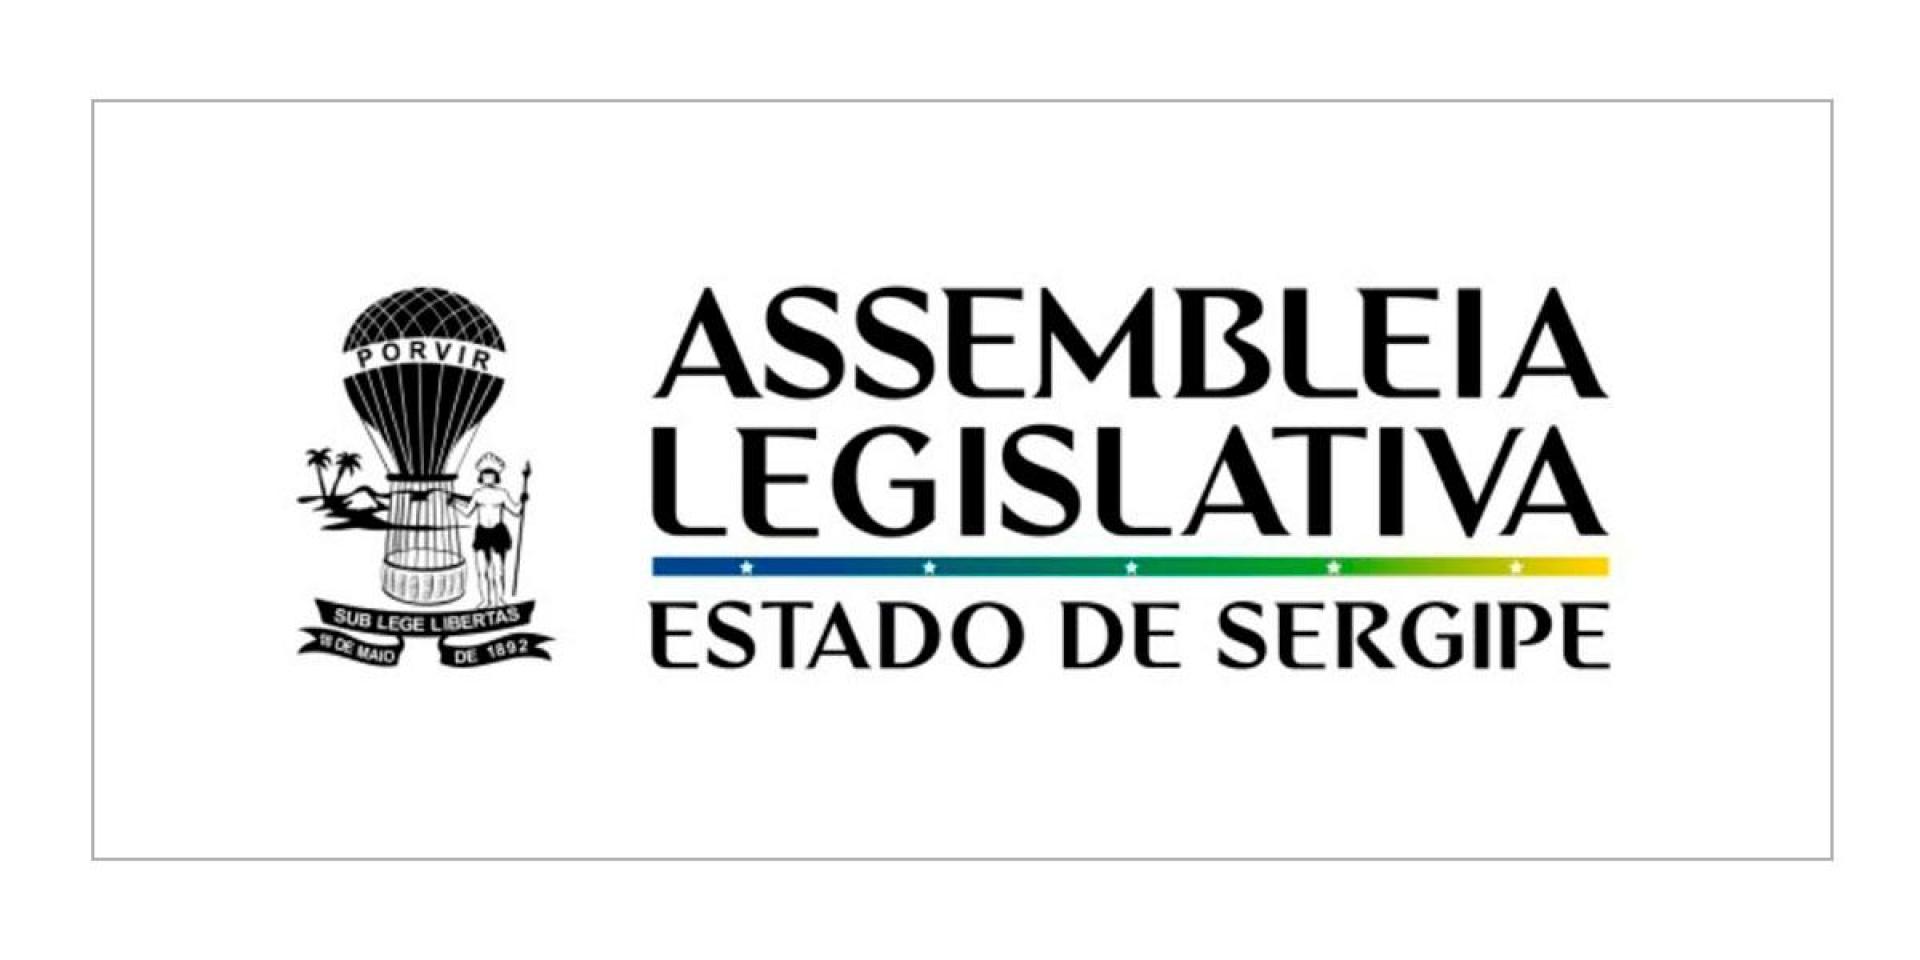 Assembléia Legislativa do Estado de Sergipe